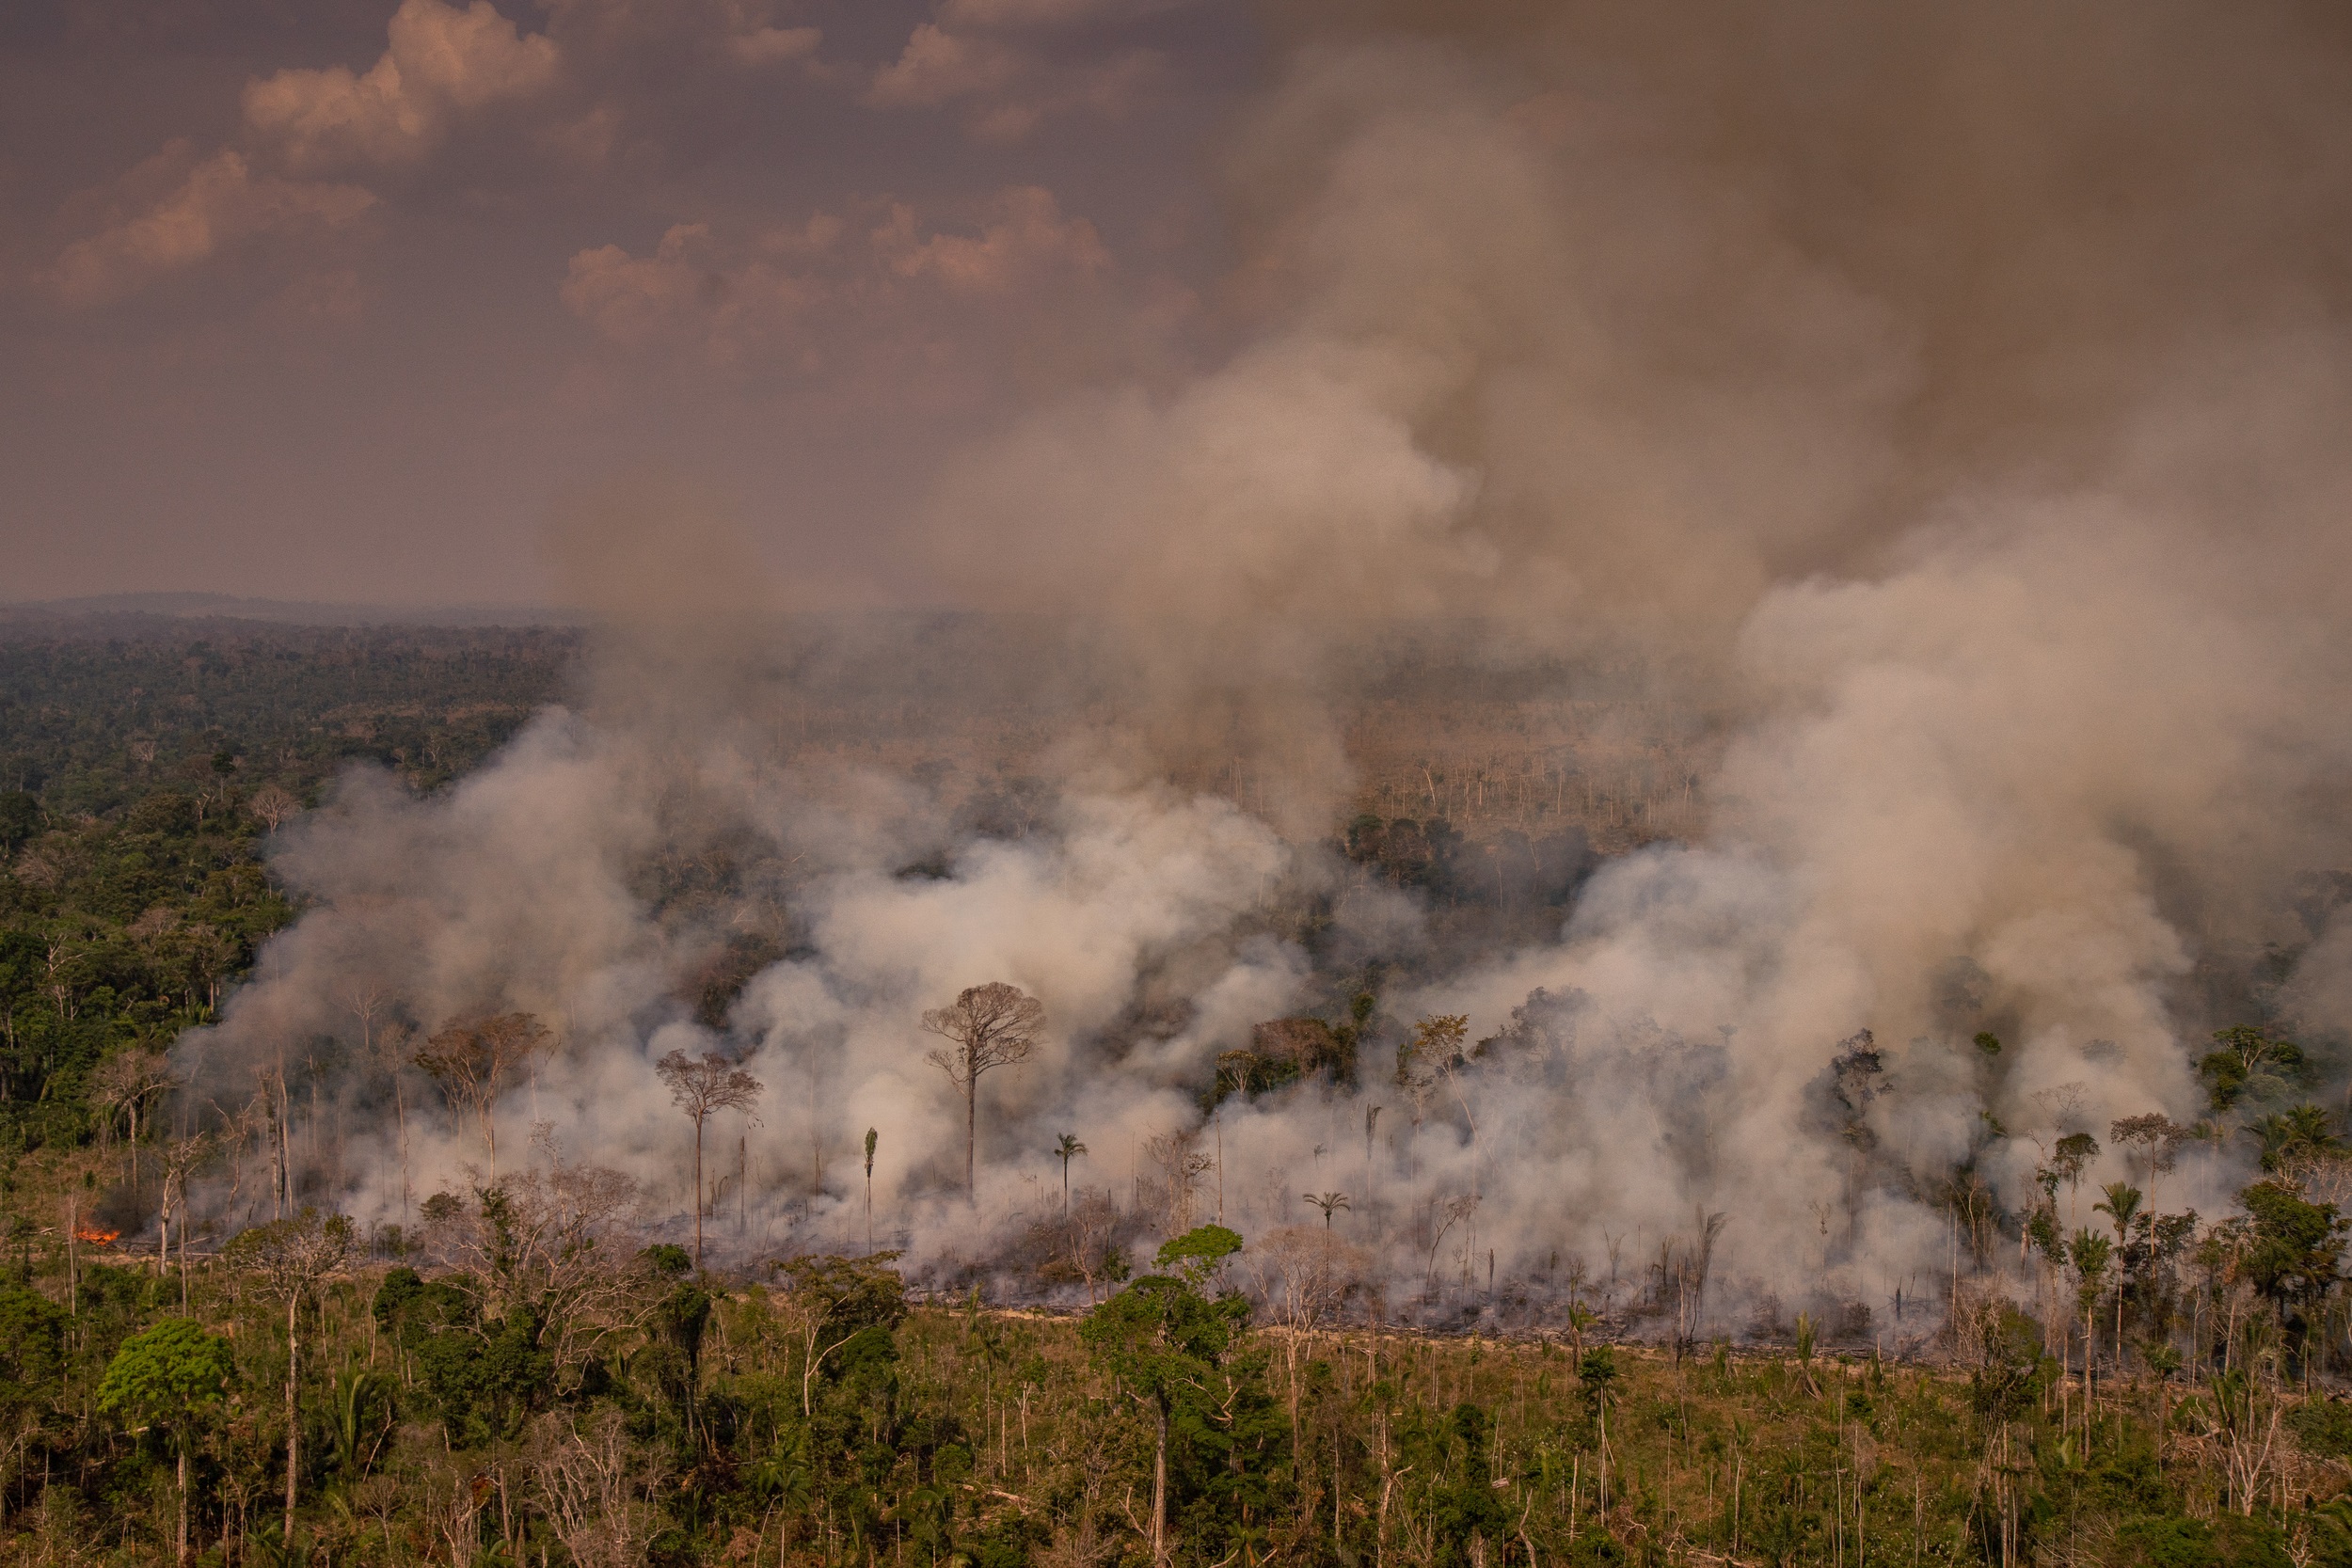 Brasil fue muy criticado por la comunidad internacional por los intensos incendios en la Amazonía en 2019 (CHRISTIAN BRAGA / GREENPEACE / CHRISTIAN BRAGA)
